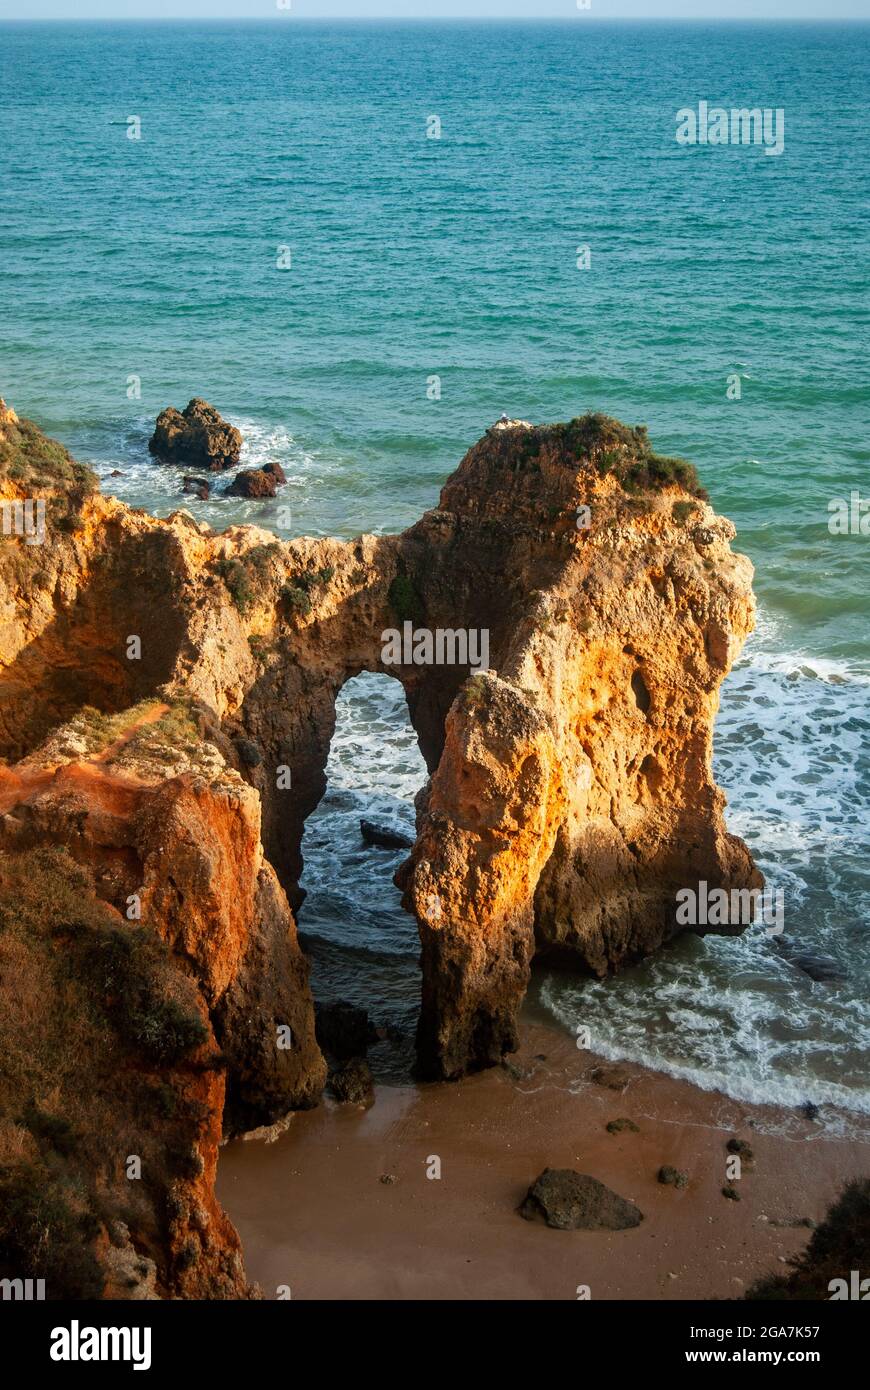 Arche naturelle au coucher du soleil sur la côte du Portugal - des rochers de couleur orange forment une arche sur la plage Banque D'Images